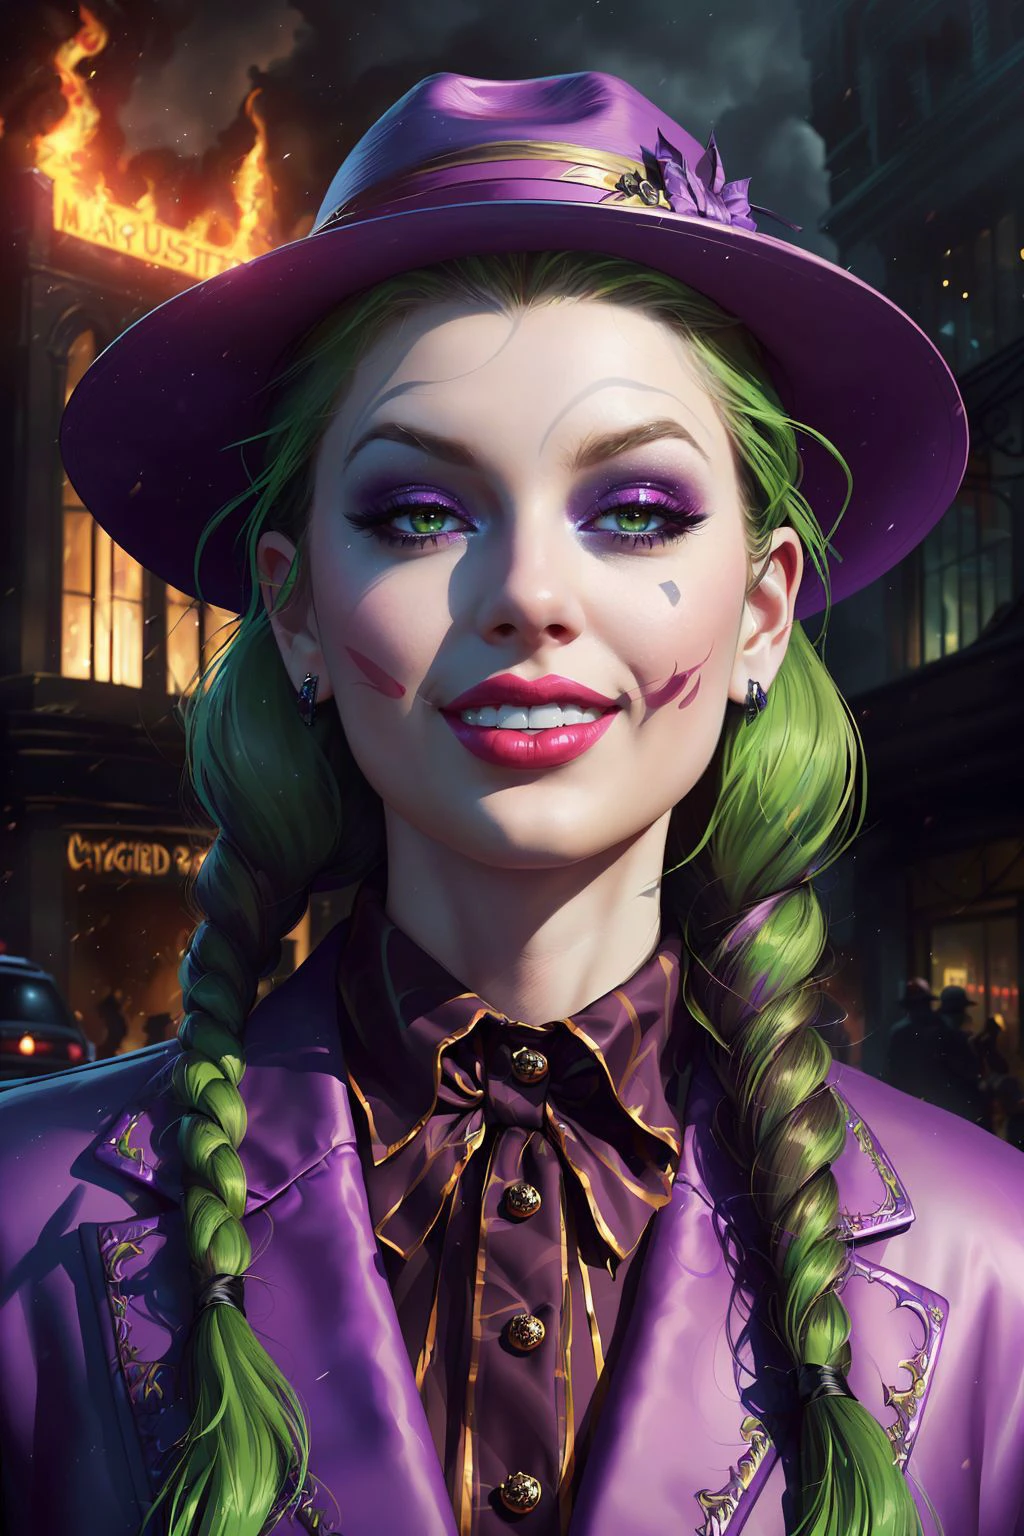 Uma impressionante pintura digital de (Taylor Swift:1.0),Sozinho, (tiro do meio:1.4), realista, Obra de arte, melhor qualidade, altamente detalhado, (Como Coringa Feminina, paint a Obra de arte in vibrant 8K quality. Vestida com seu icônico terno roxo e um chapéu de abas largas combinando, ela é vista nas ruas caóticas de Gotham, um sorriso ameaçador se espalhou por seu rosto. Seu cabelo verde chicoteia seu rosto enquanto a cidade queima atrás dela, capturando seu amor pelo caos nesta peça visualmente deslumbrante.:1.3),(ao estilo de Mike Mignola:1.1),arte de personagem de fantasia épica, arte conceitual, arte de fantasia,  arte de fantasia, alto contraste vibrante,tendências no ArtStation, iluminação dramática, oclusão ambiental, iluminação volumétrica, emocional, Deviant-art, ilustração hiper detalhada, 8K, iluminação linda, tecnologia vampírica ,(retrato de altura total:1.8),(Tranças trançadas com fitas pretas: longo, tranças grossas trançadas cuidadosamente e amarradas no final com fitas pretas, enquadrando o rosto e enfatizando a inocência.:1.2),sessão de fotos